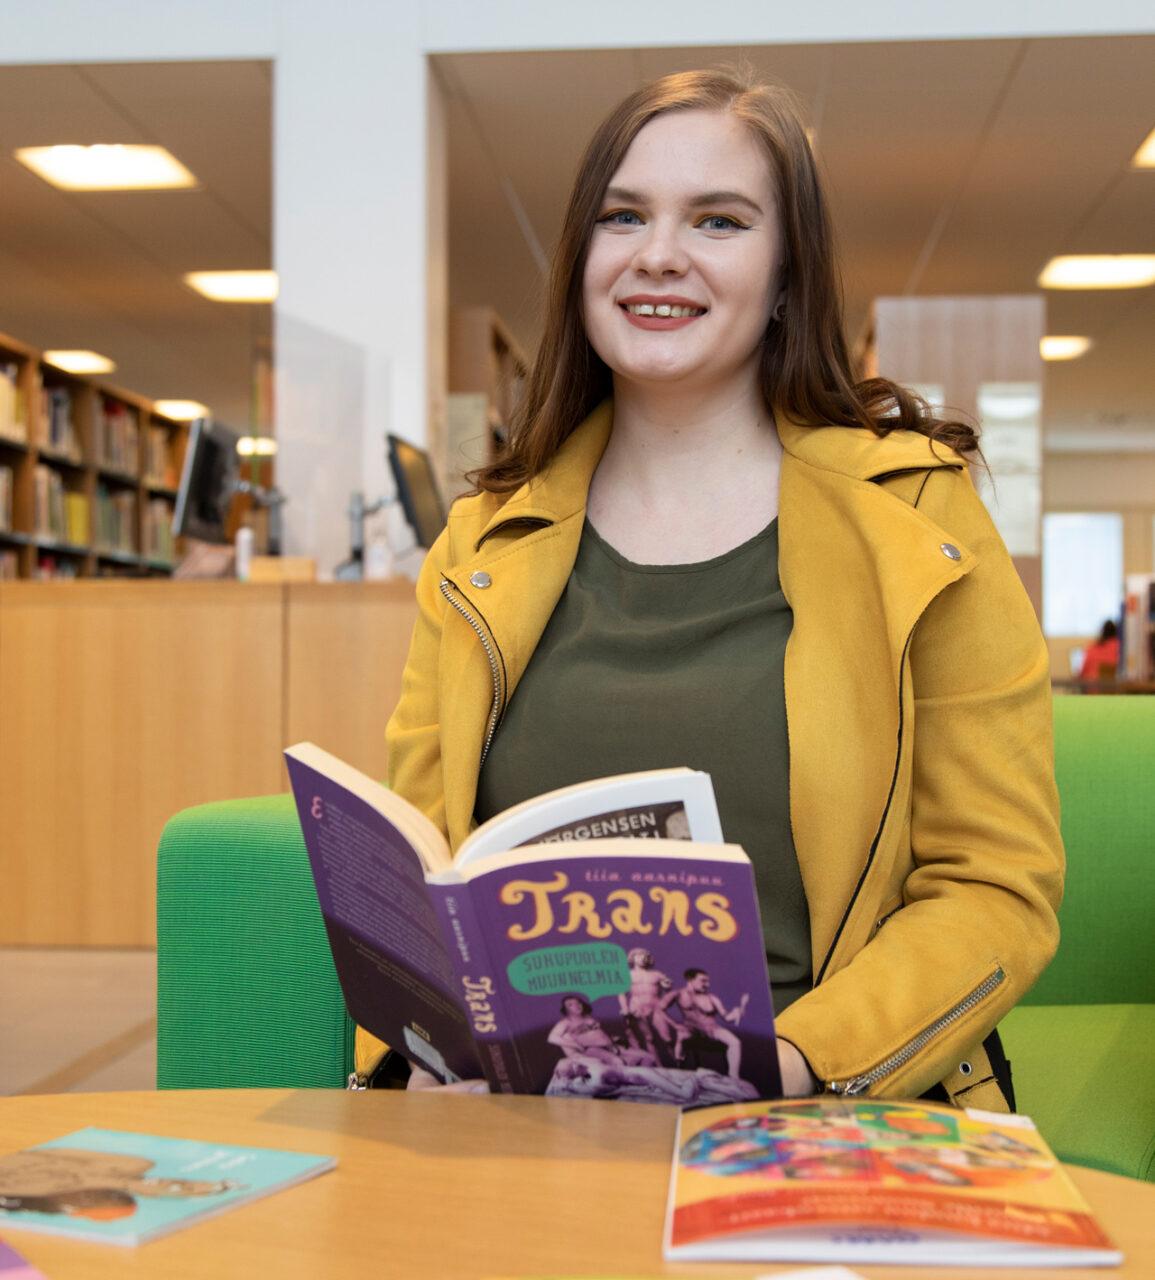 Opiskelija, Oulun Setan työntekijä Milla Heino istuu kirjastossa lukemassa trans-aiheista kirjaa.